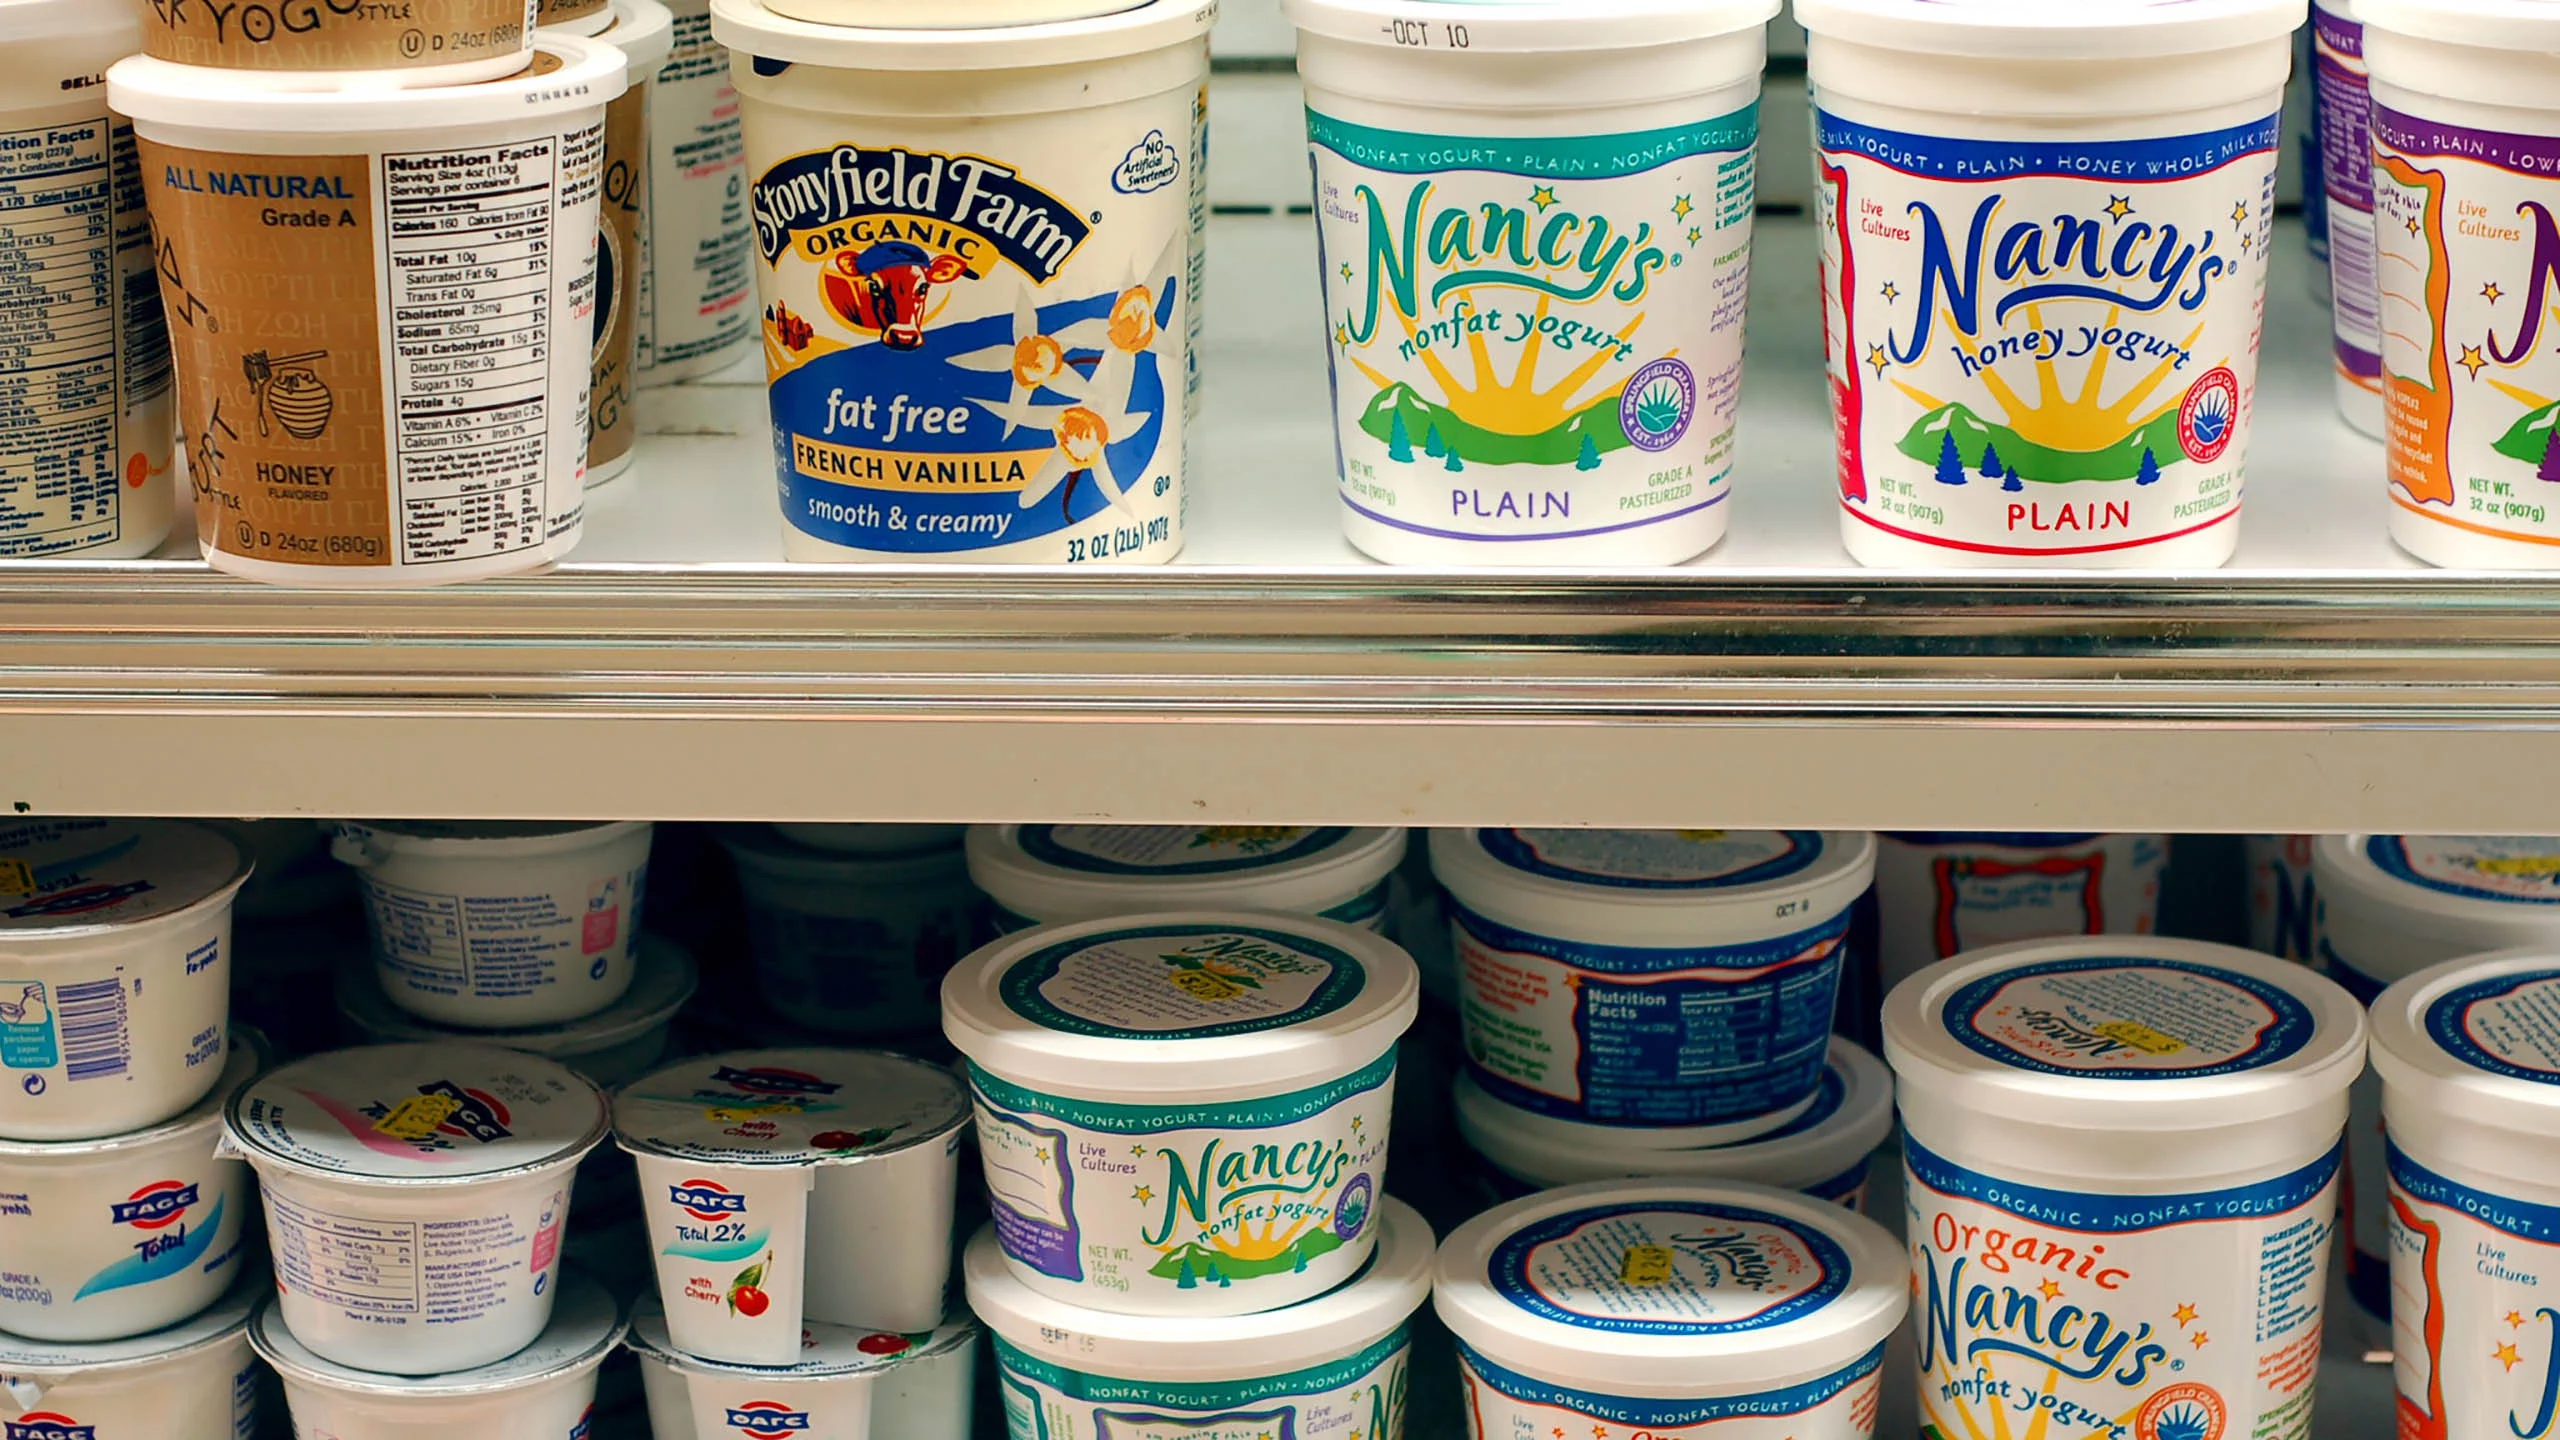 No debes guardar comida en envases de yogurt